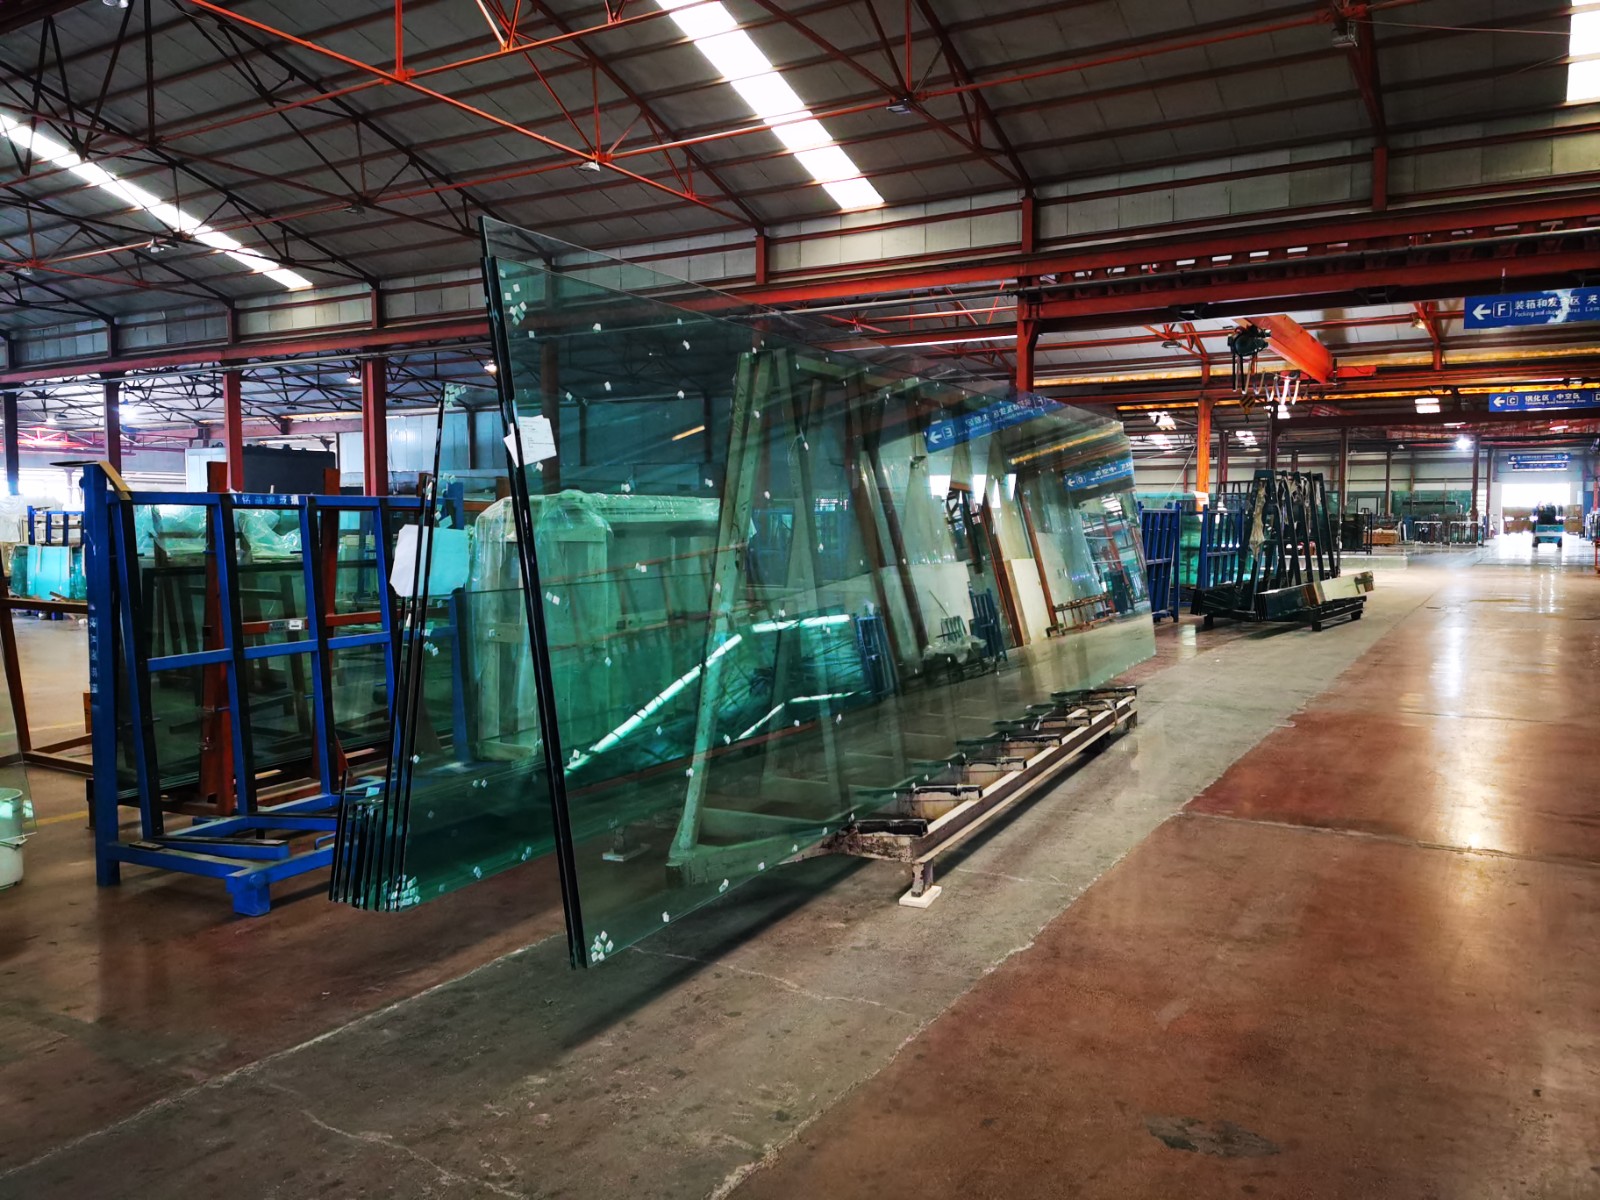 超大钢化玻璃、超大弯钢化玻璃